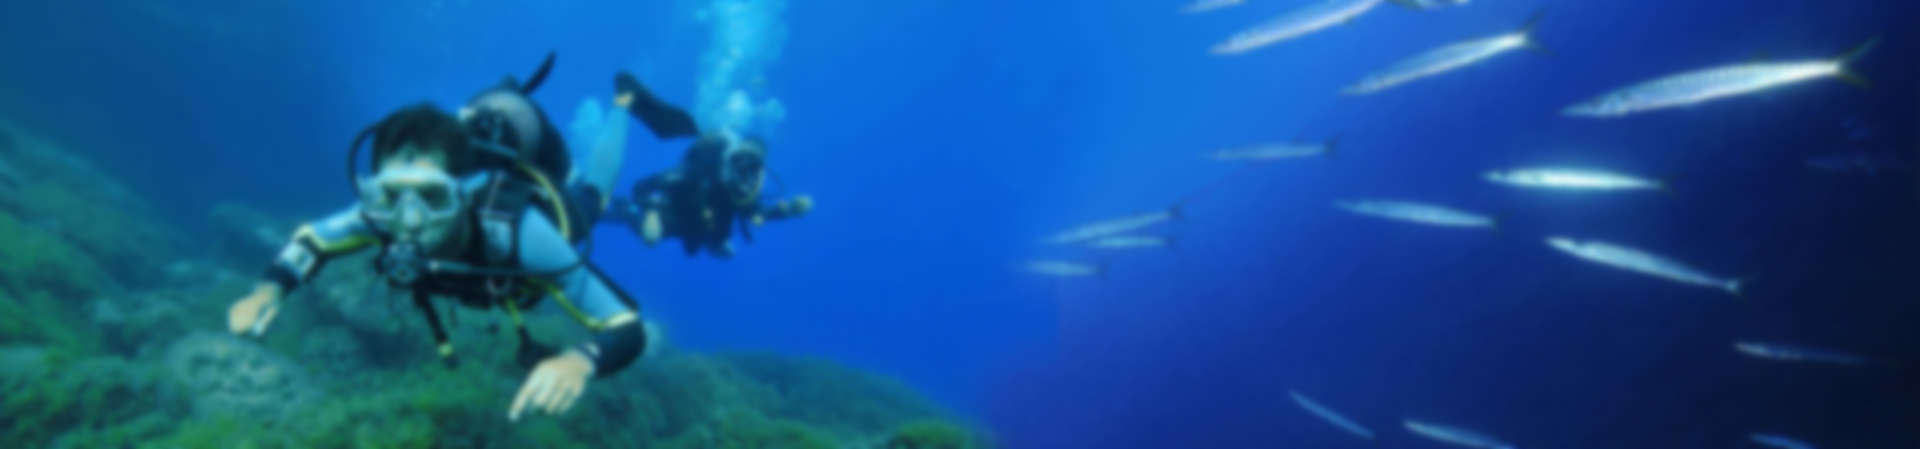 Fotografia subaquática